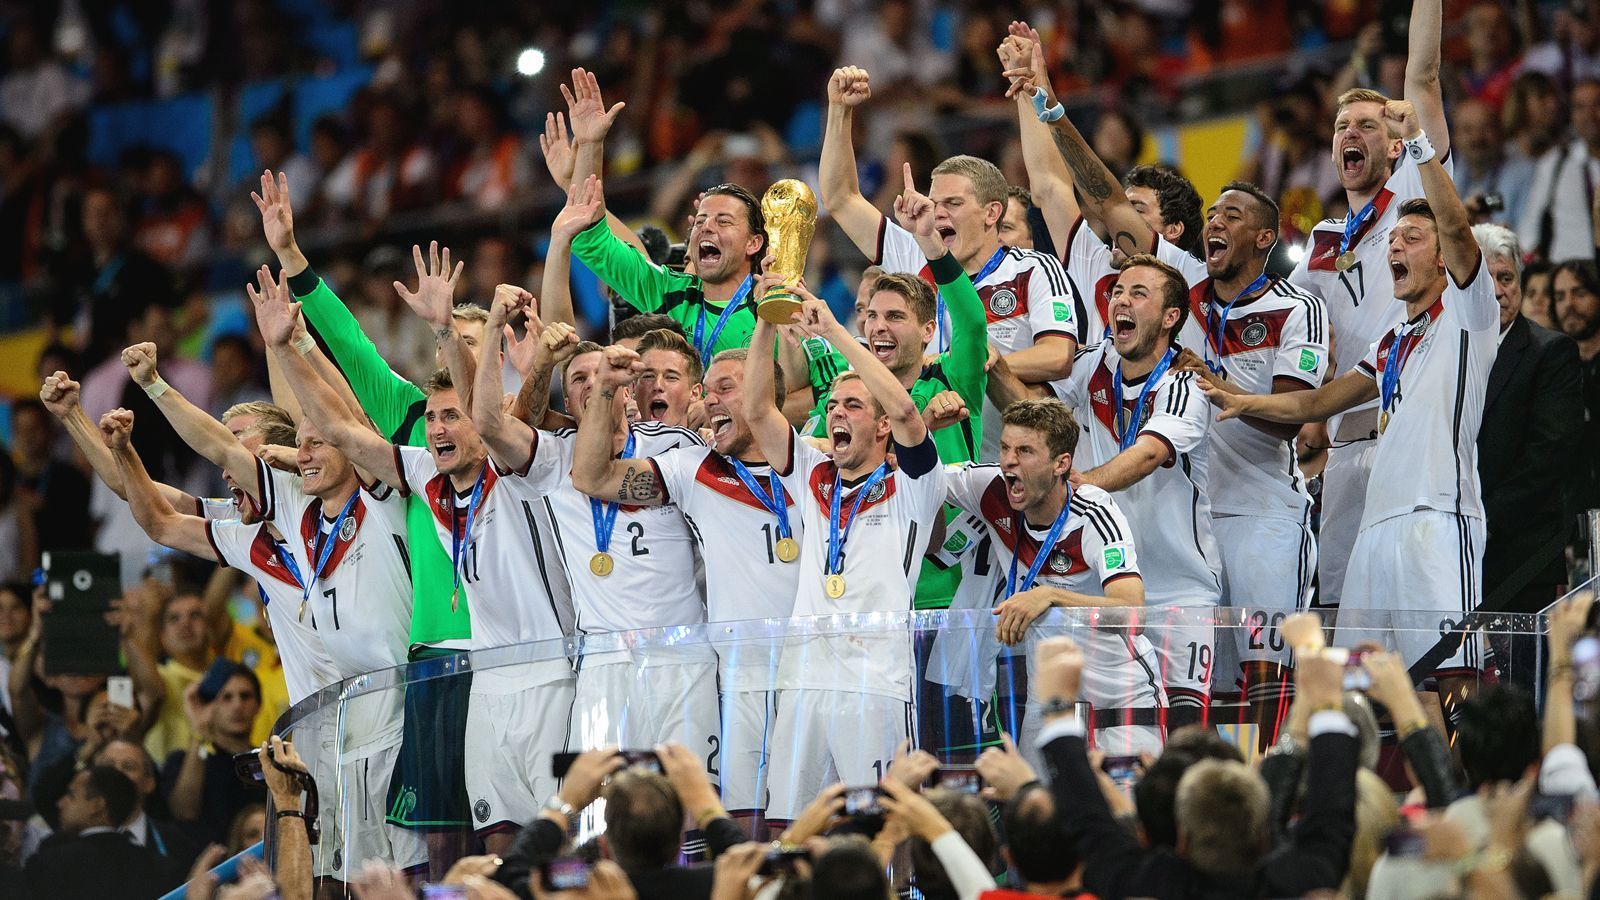 
                <strong>Der Klub der Weltmeister soll exklusiv bleiben</strong><br>
                Irgendwie sind wir doch alle stolz darauf, eine Weltmeister-Nation zu sein. Wir fühlen uns so, als wären wir Mitglied eines exklusiven Clubs: 211 Nationalmannschaften gibt es in der Welt, nur acht davon wurden Weltmeister - Deutschland ist eine davon. Doch je mehr neue Weltmeister hinzukommen, desto weniger exklusiv ist dieser Club. Daher sagen wir: Sorry Kroatien, du kommst hier nicht rein!
              